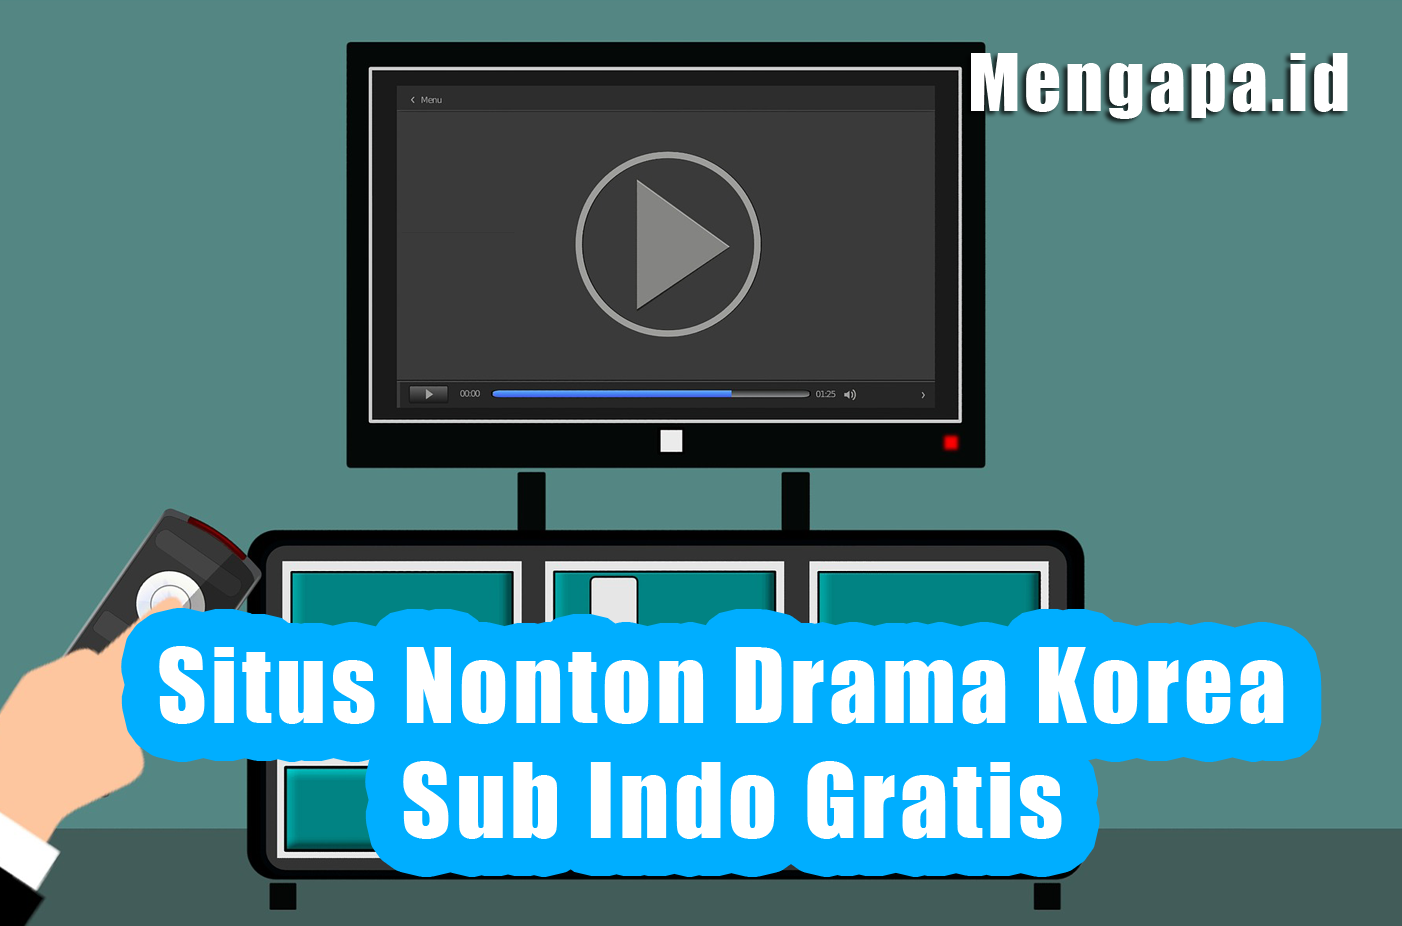 Situs Nonton Drama Korea Sub Indo Gratis